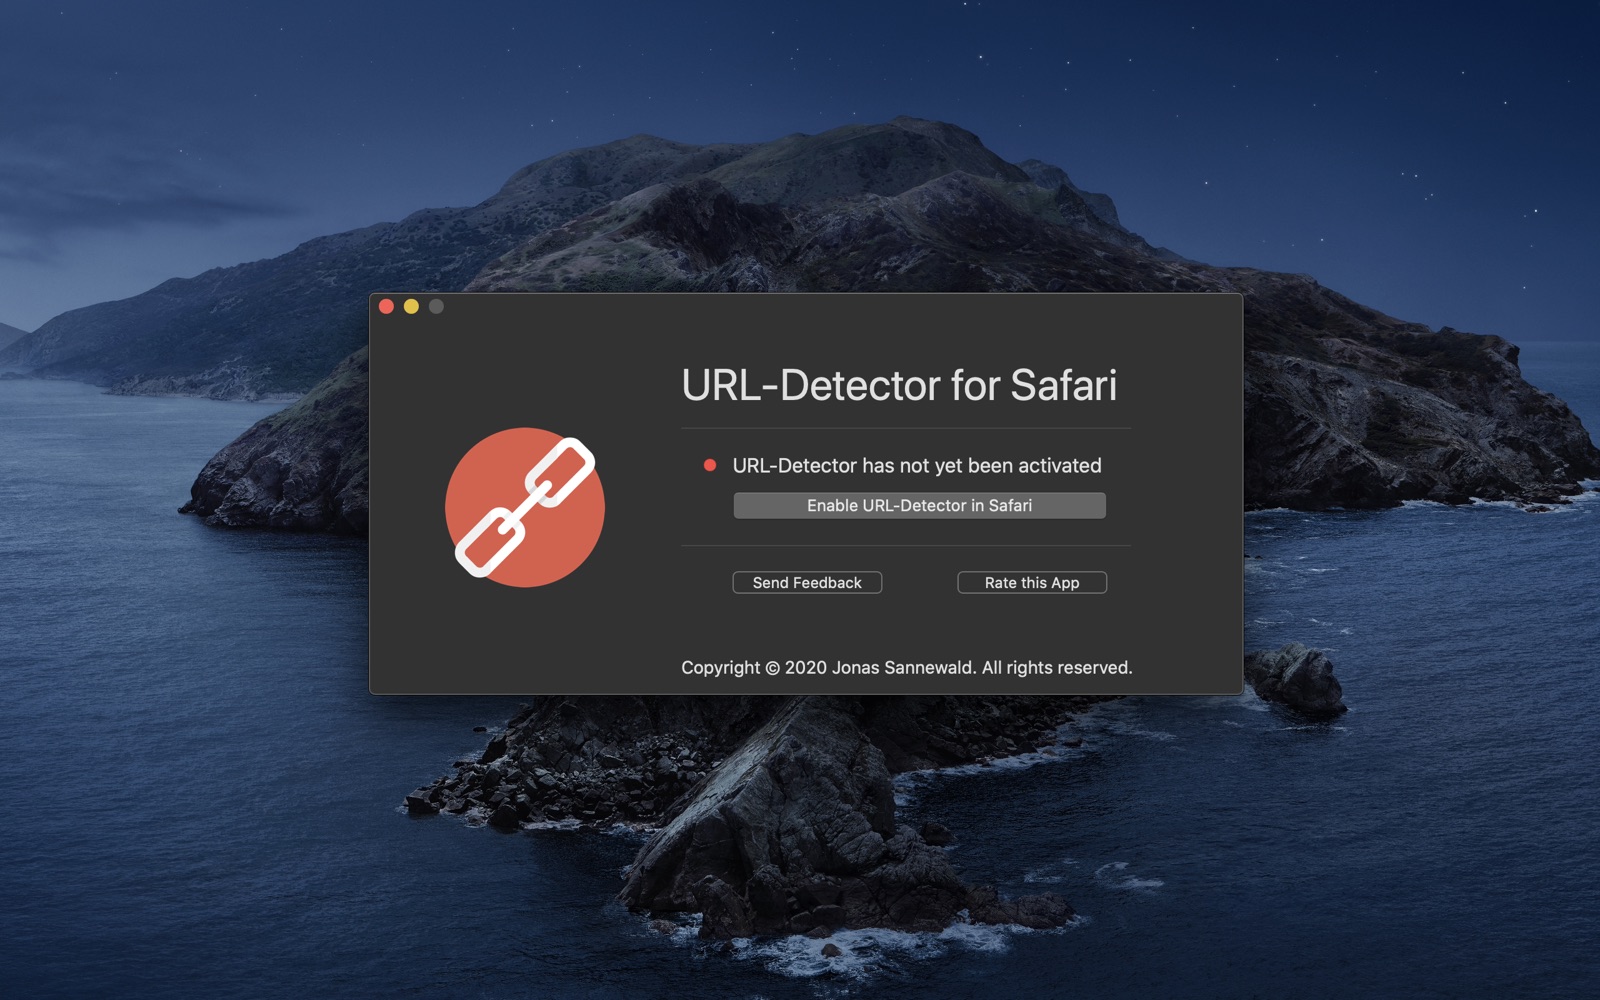 URL-Detector for Safari 1.0 : Main Window